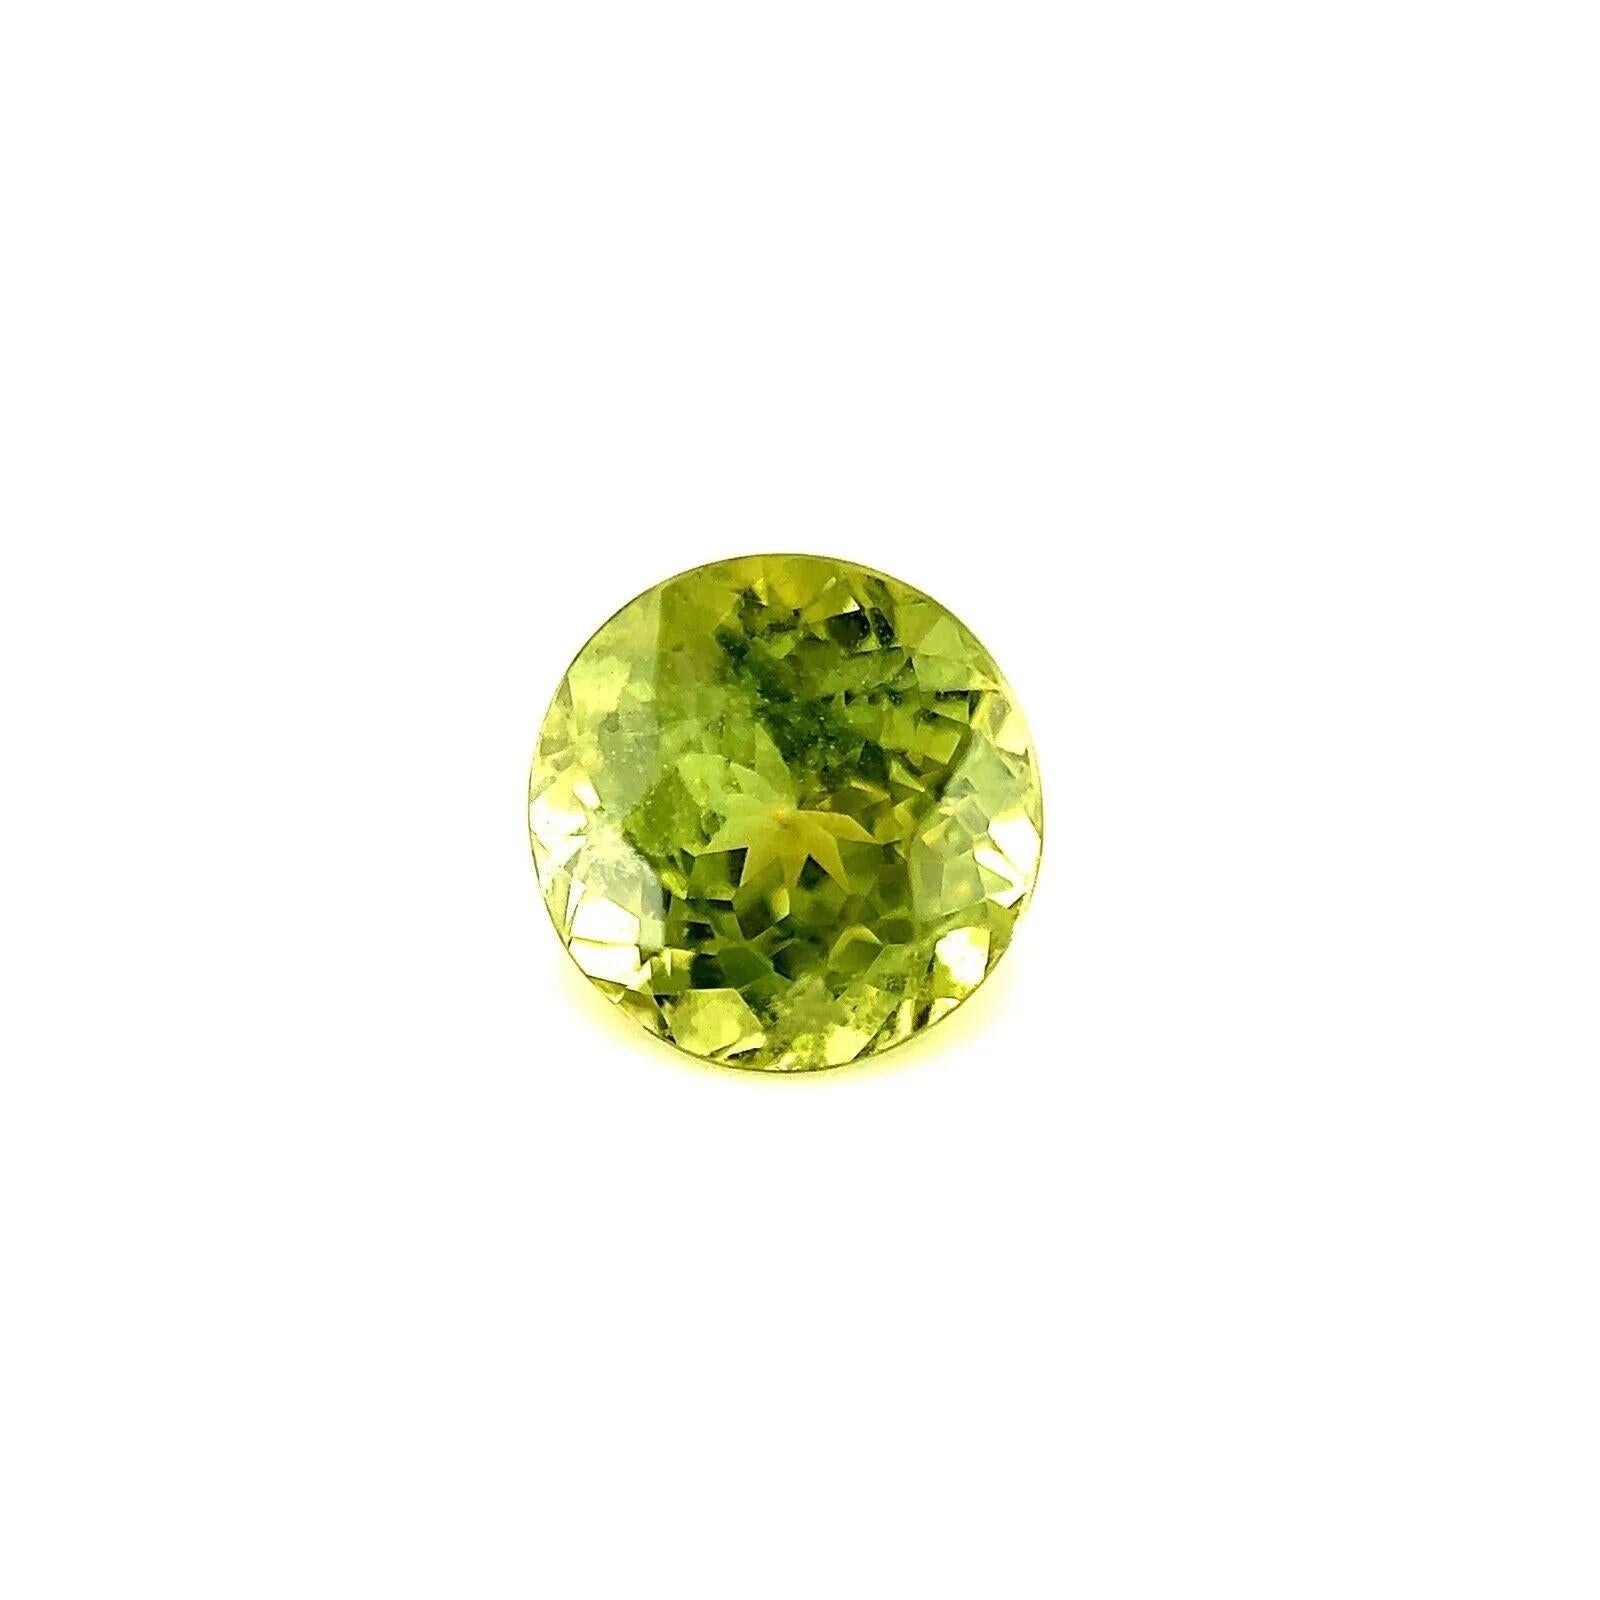 Saphir jaune vif vert 1.58ct rond taille brillant pierre précieuse en vrac 6.5mm

Saphir naturel jaune vert à taille ronde.
1,58 carat avec une couleur jaune vert vif. Elle présente également une bonne clarté, une pierre propre avec seulement